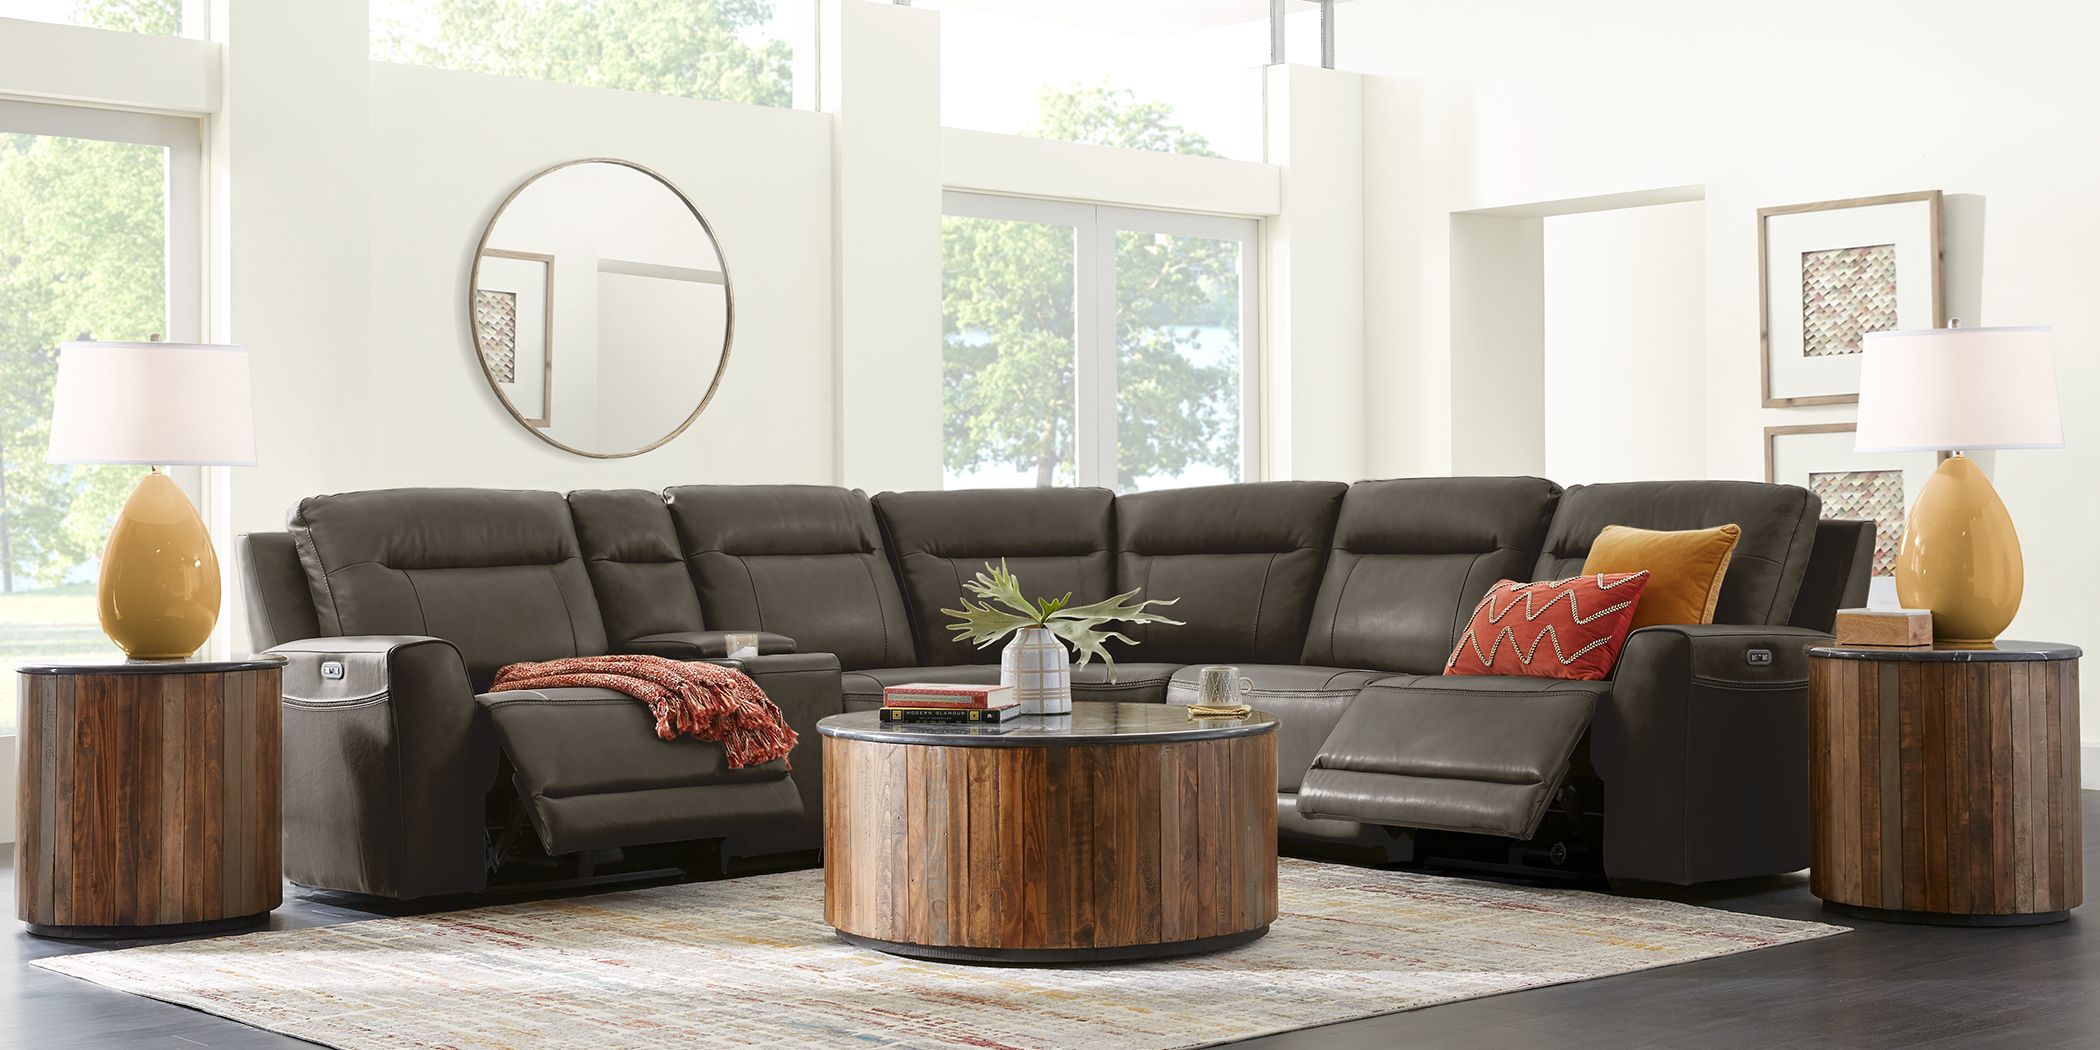 Black Leather Living Room Sets Black Leather Furniture